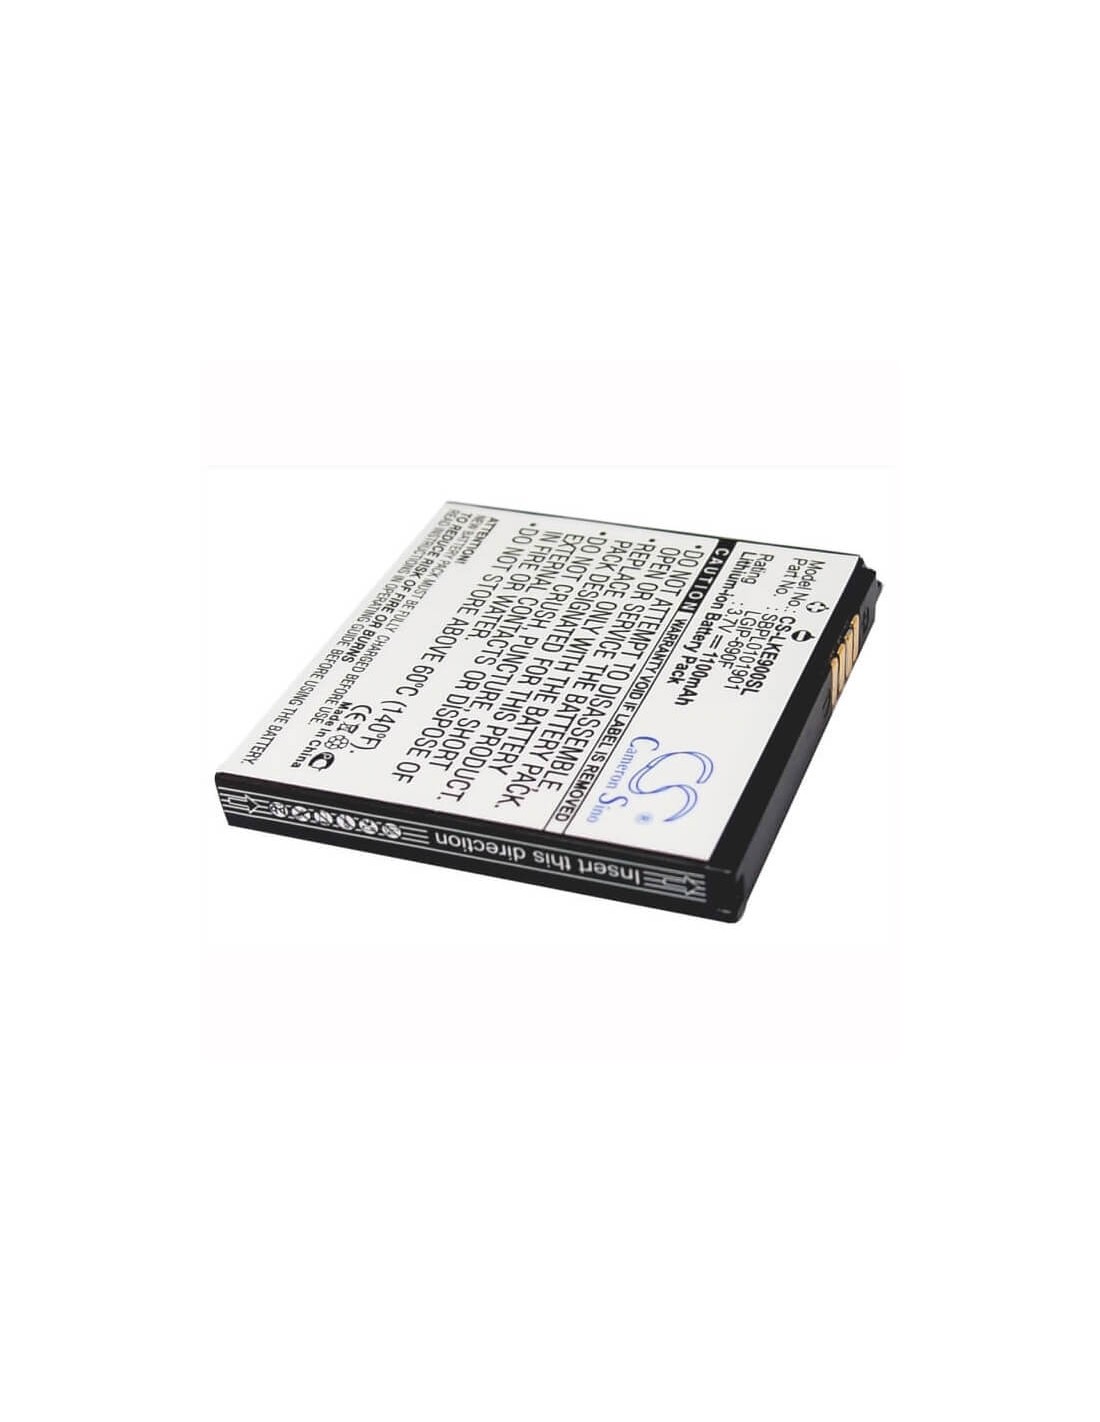 Battery for LG Optimus 7, E900, C900 3.7V, 1100mAh - 4.07Wh